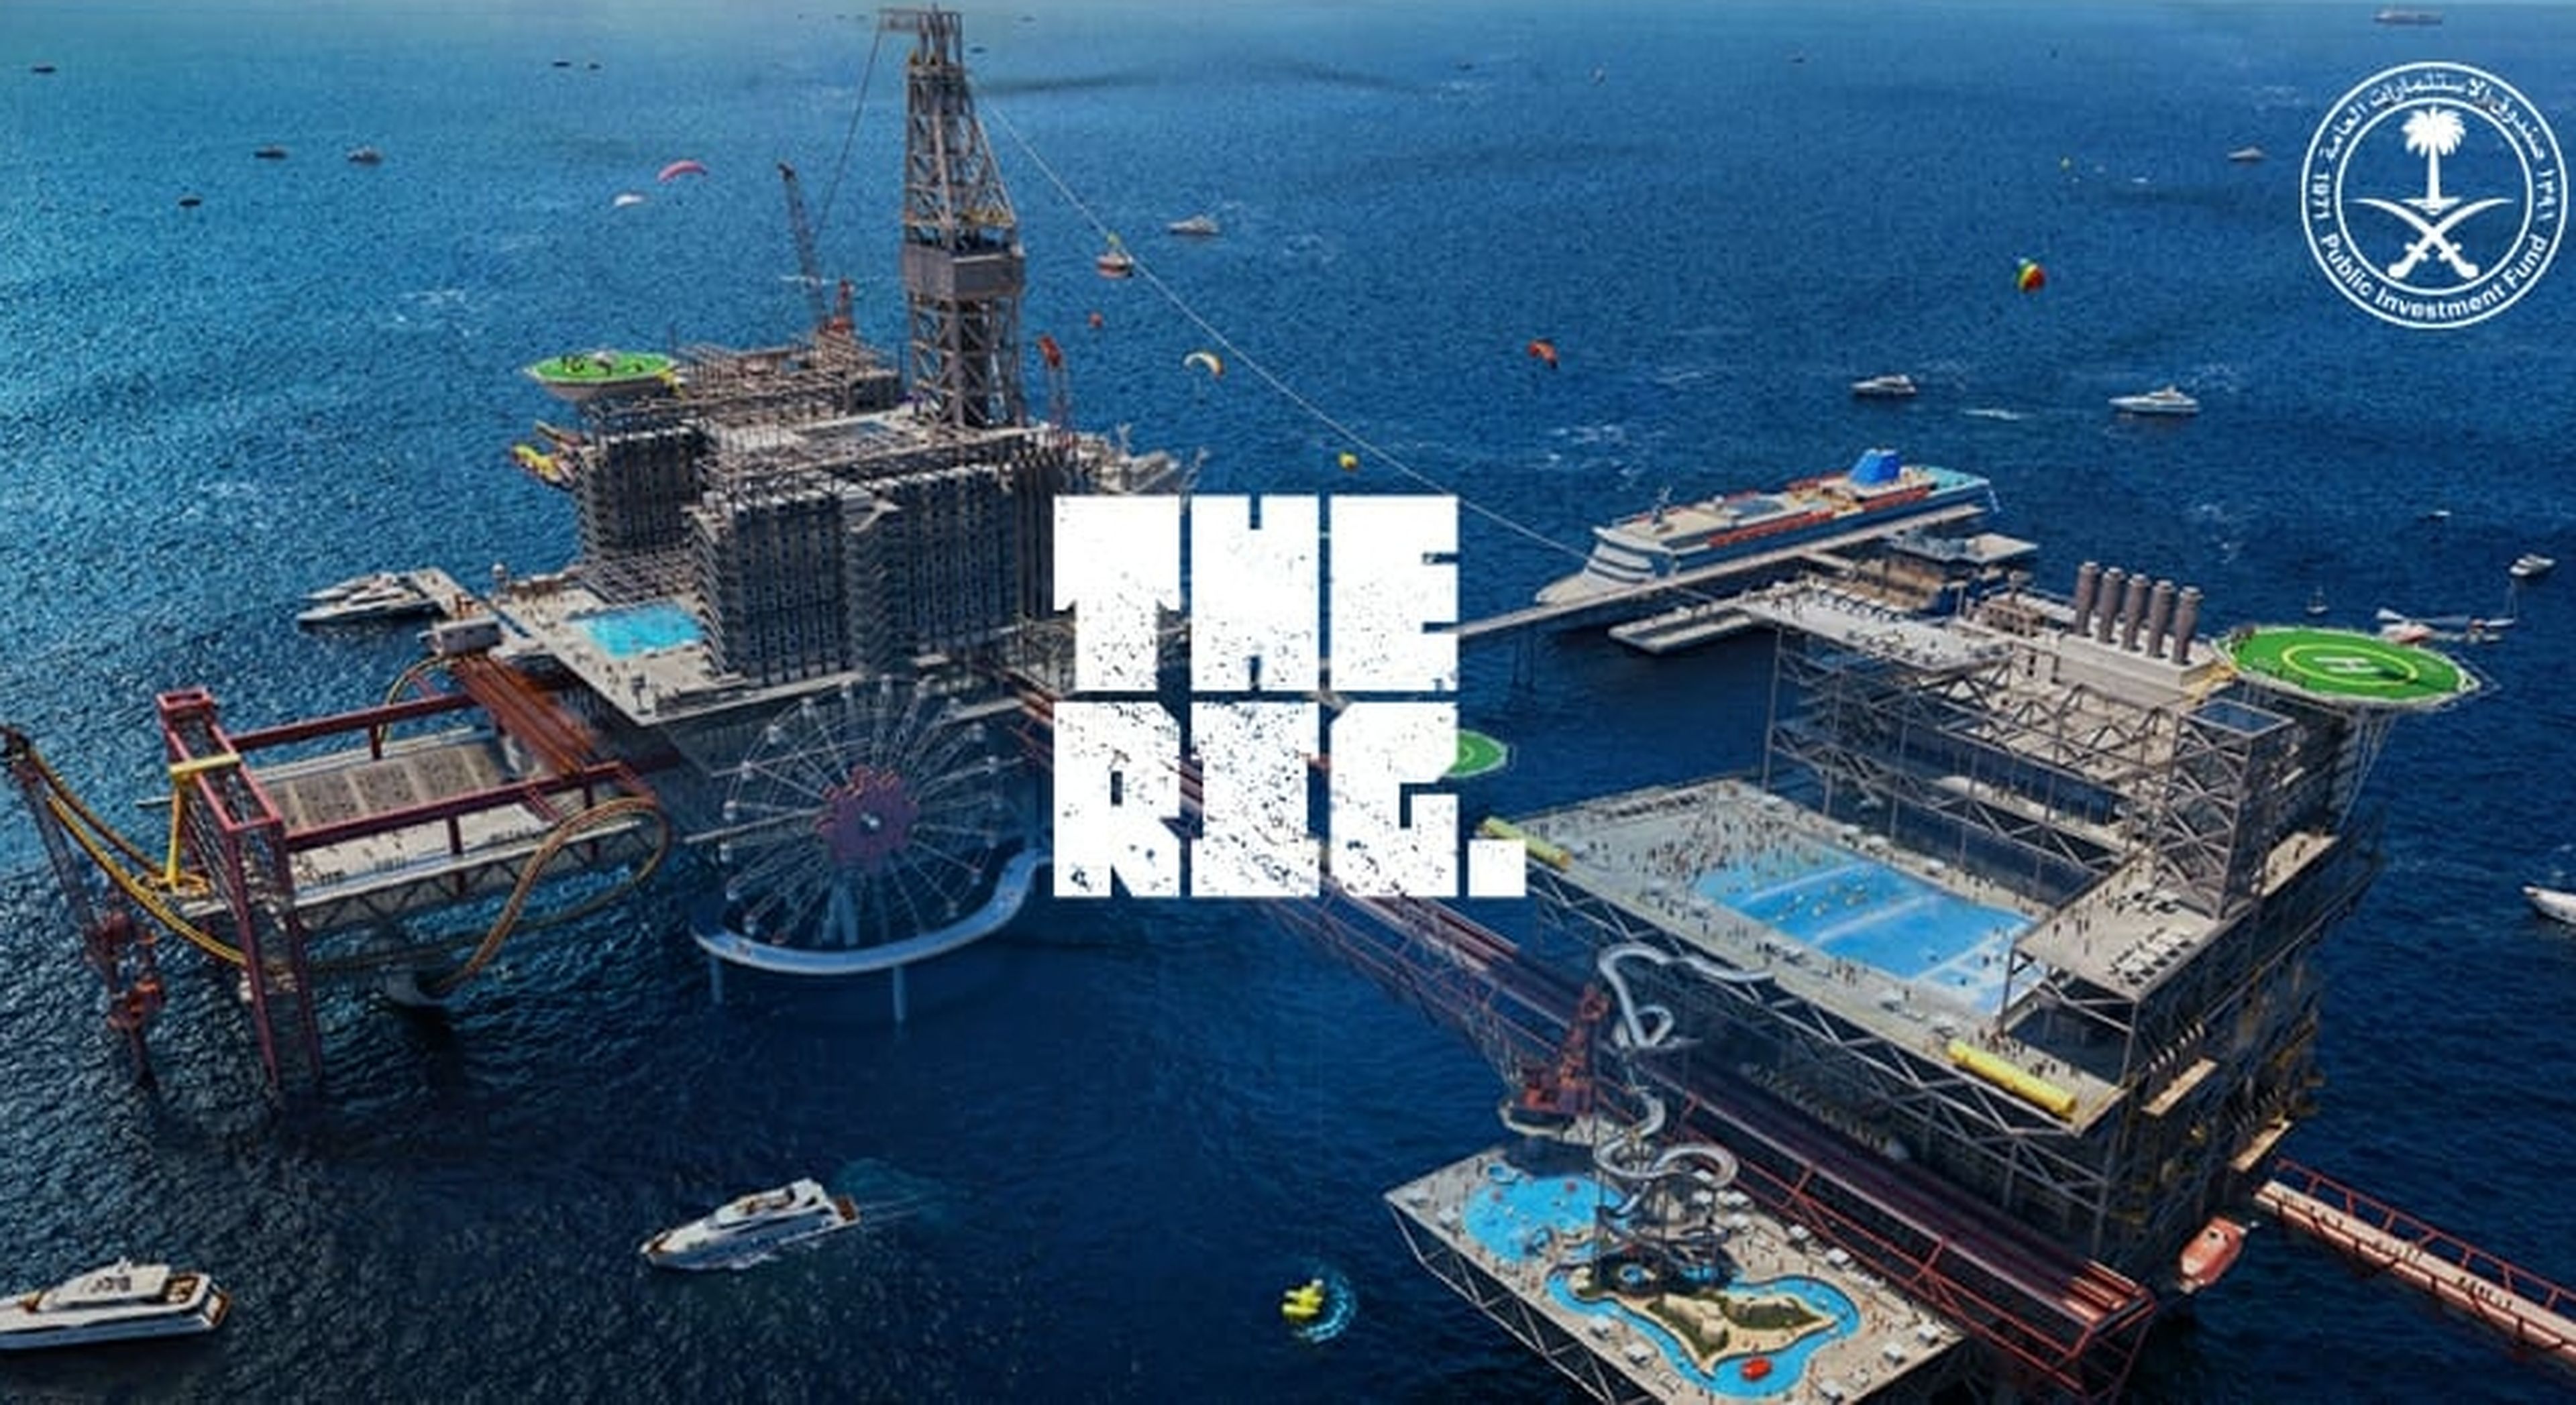 The Rig, la plataforma petrolífera convertida en un parque de atracciones extremo, en Arabia Saudí